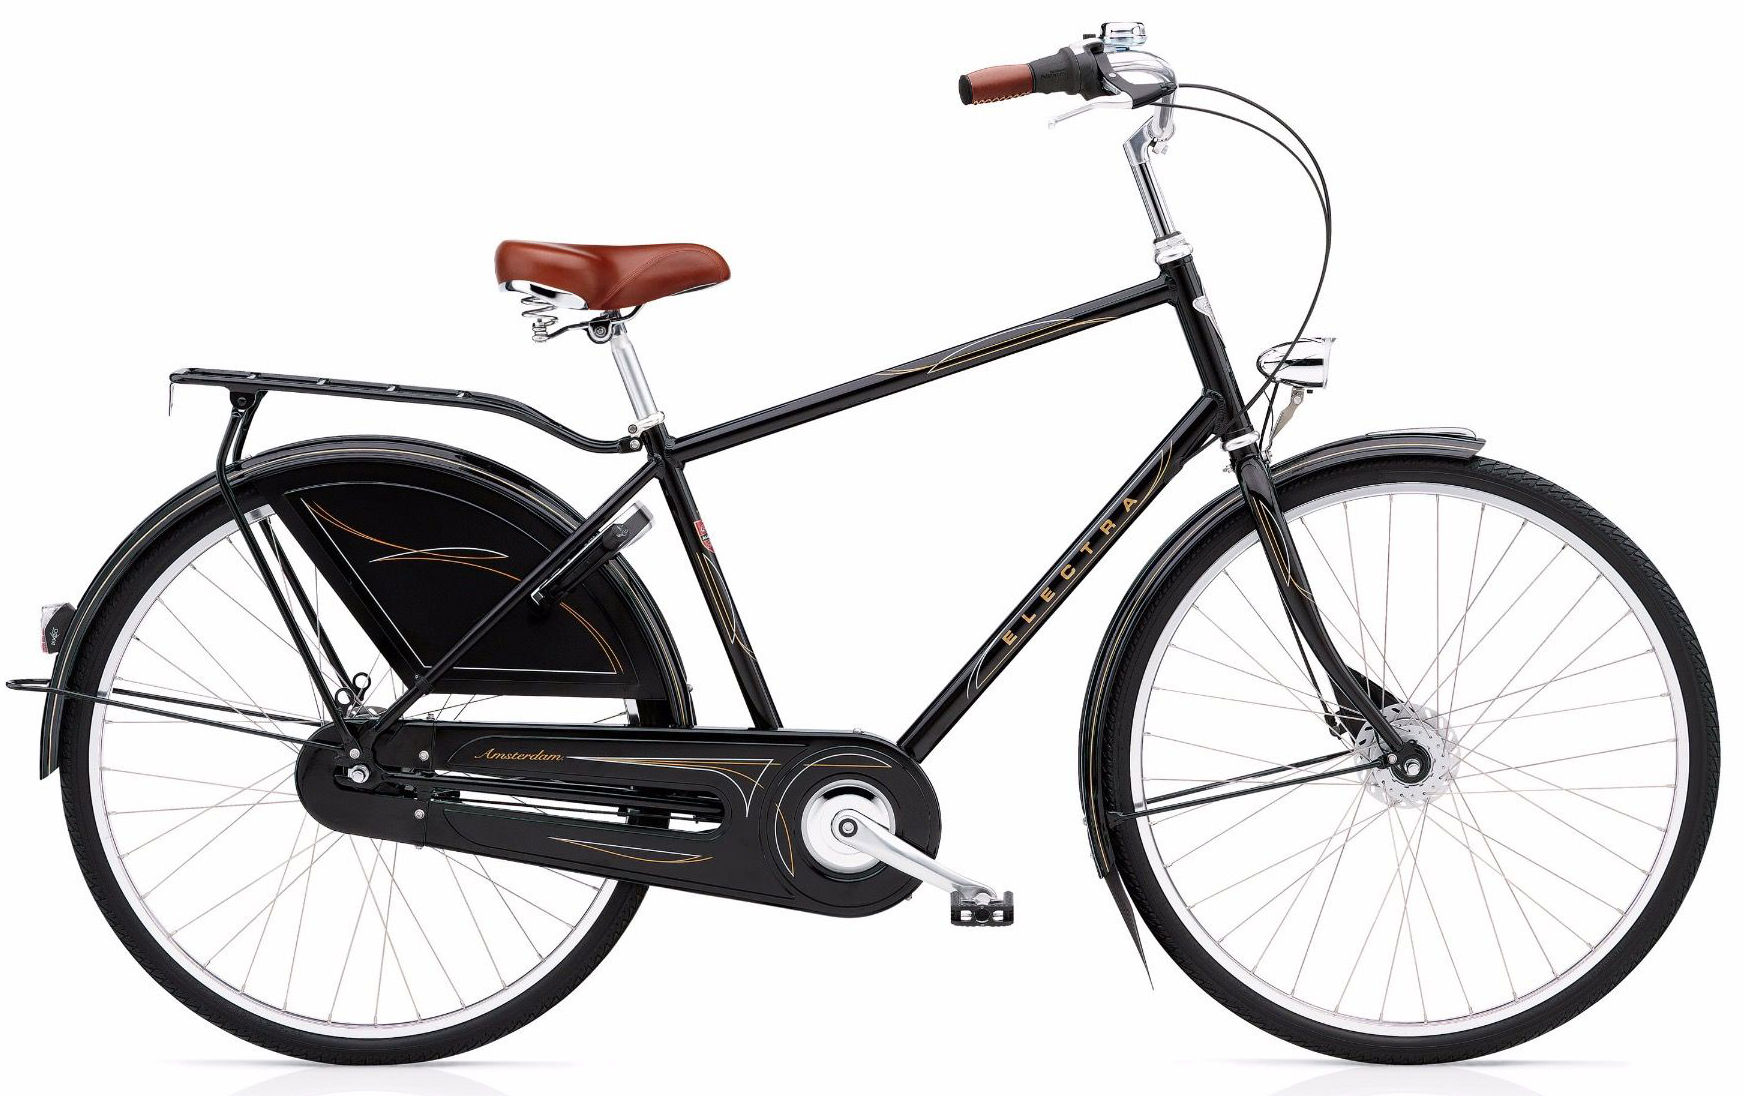  Отзывы о Городском велосипеде Electra Amsterdam Royal 8i men's 2019